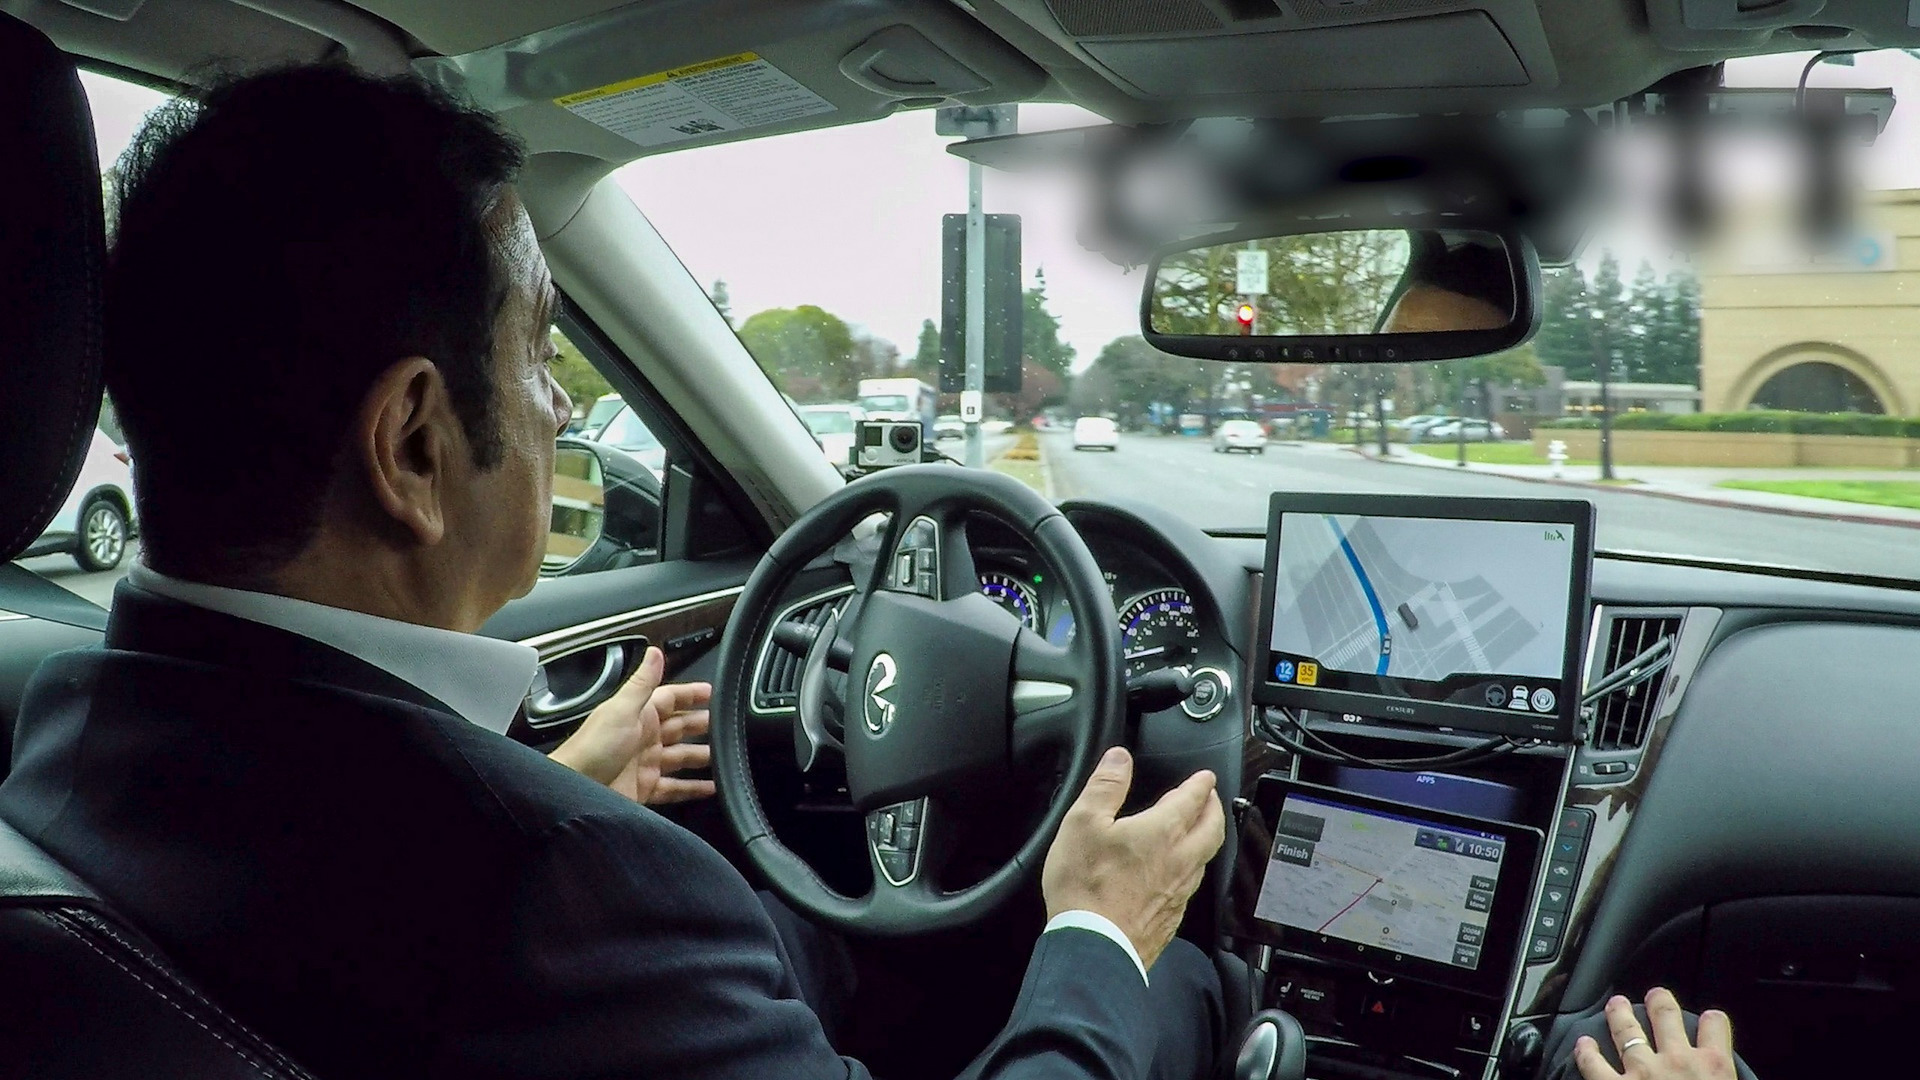 "كارلوس غصن" رئيس نيسان التنفيذي لديه تفاؤل حذر اتجاه المركبات ذاتية القيادة Nissan 1